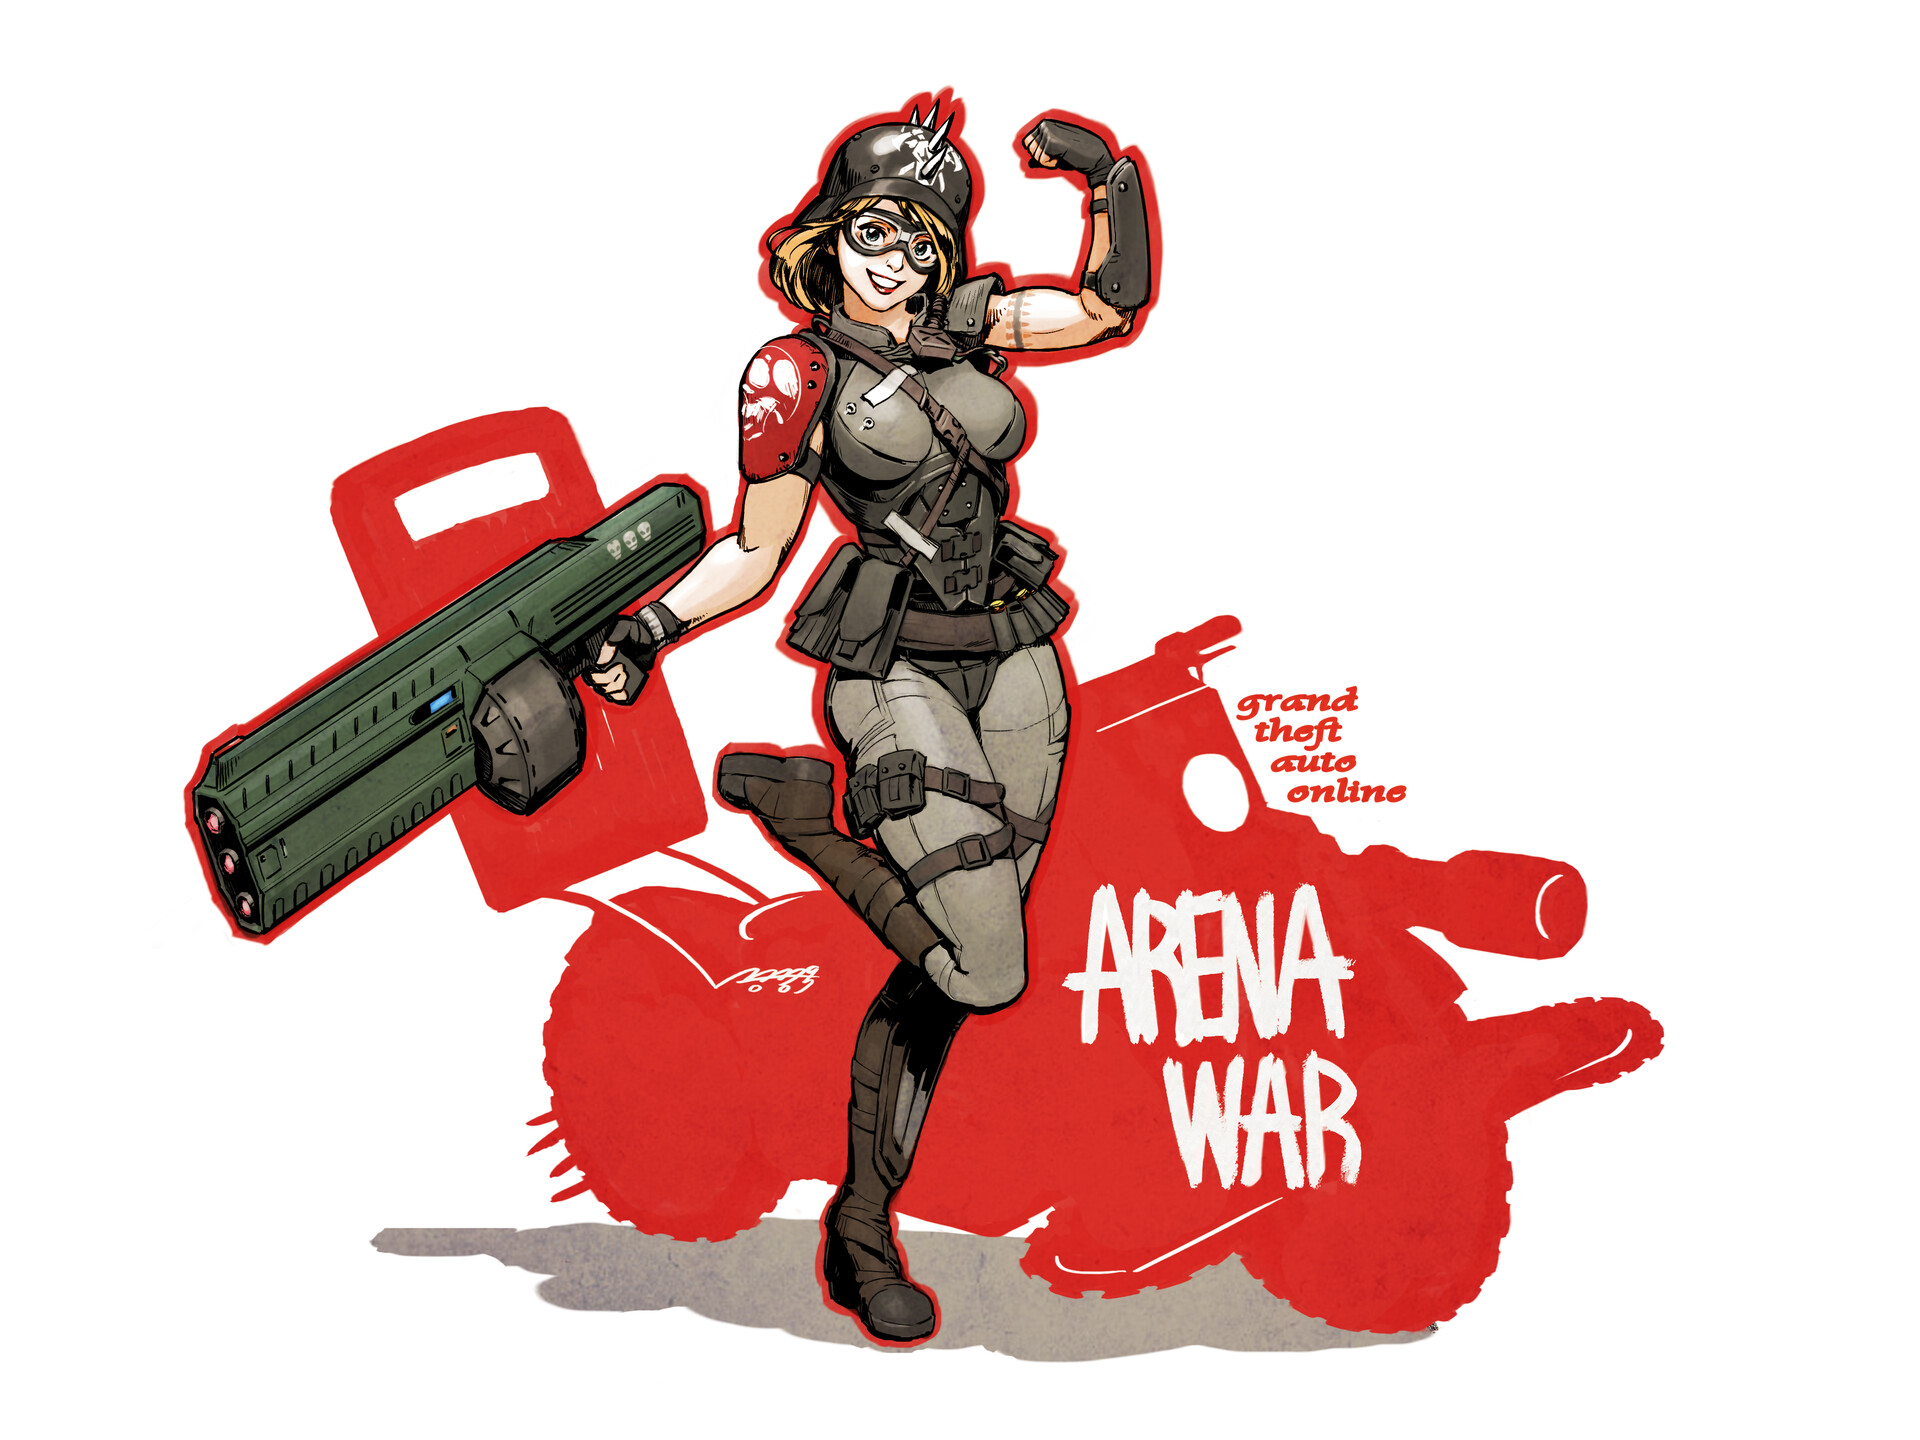 GTA Online: Arena War 